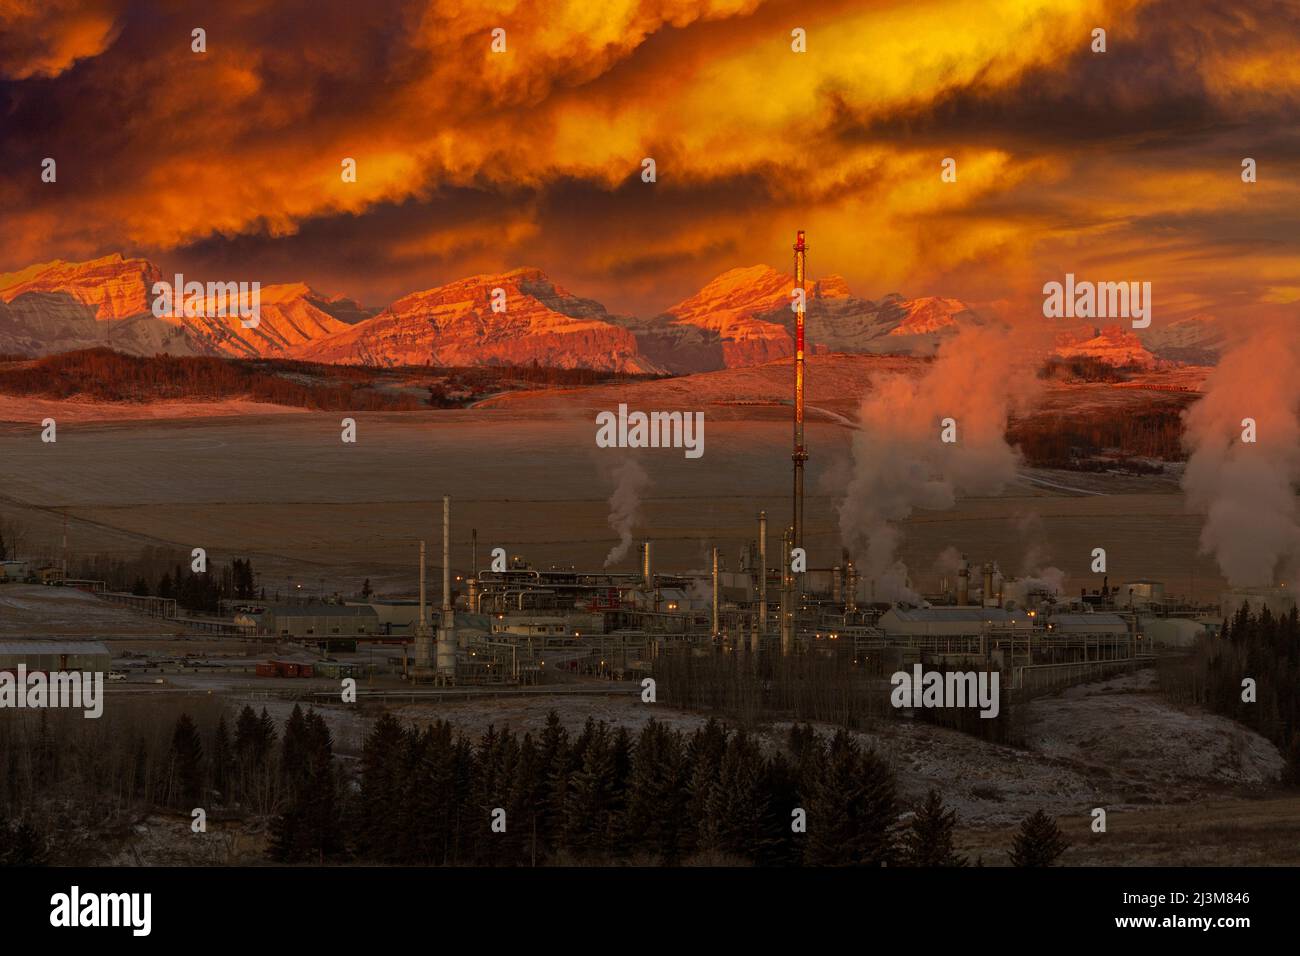 Impianto a gas drammaticamente lite all'alba con la catena montuosa ricoperta di neve sullo sfondo con le nuvole incandescenti nel cielo, ad ovest di Calgary Foto Stock